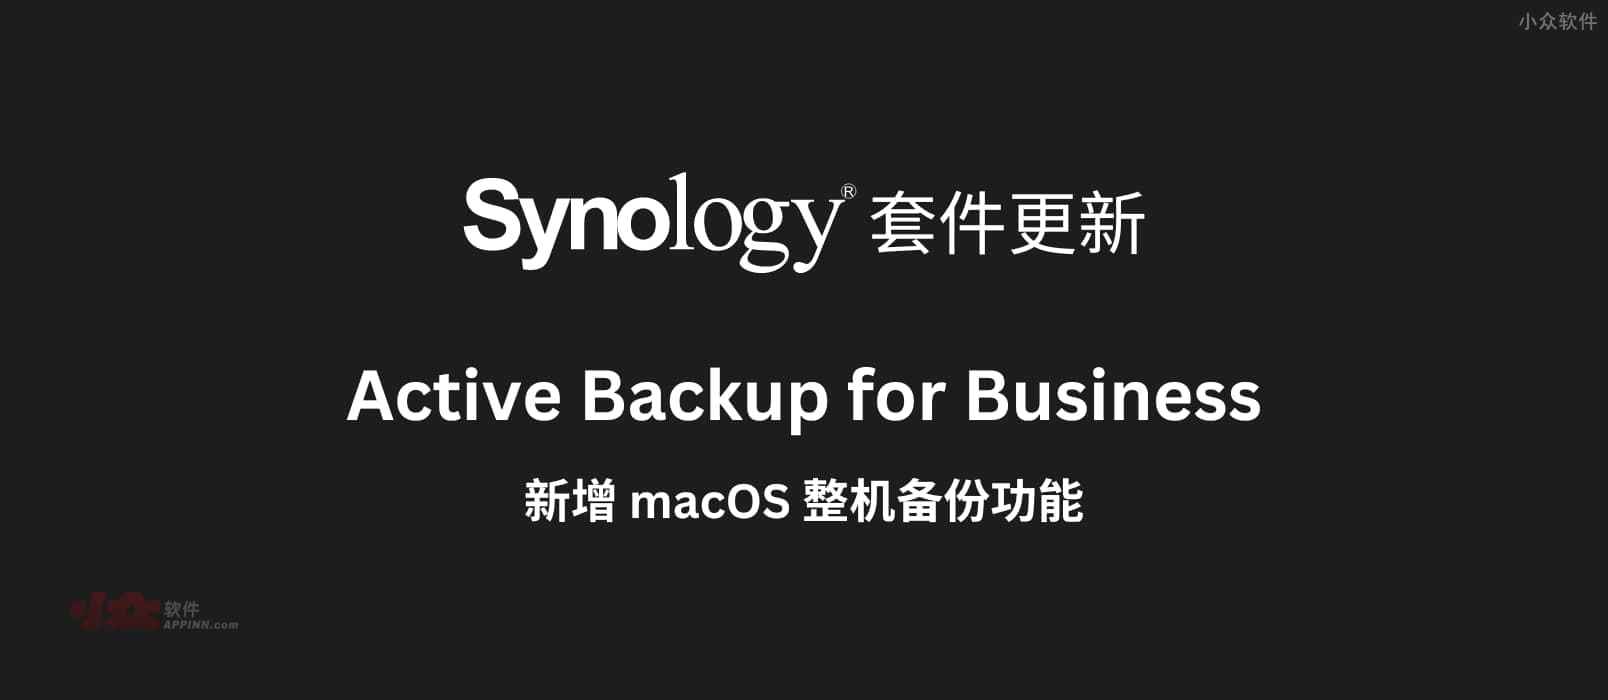 群晖 Active Backup for Business 套件新增 macOS 整机备份功能，目前已支持个人电脑、物理服务器、文件服务器、虚拟机、NAS 备份